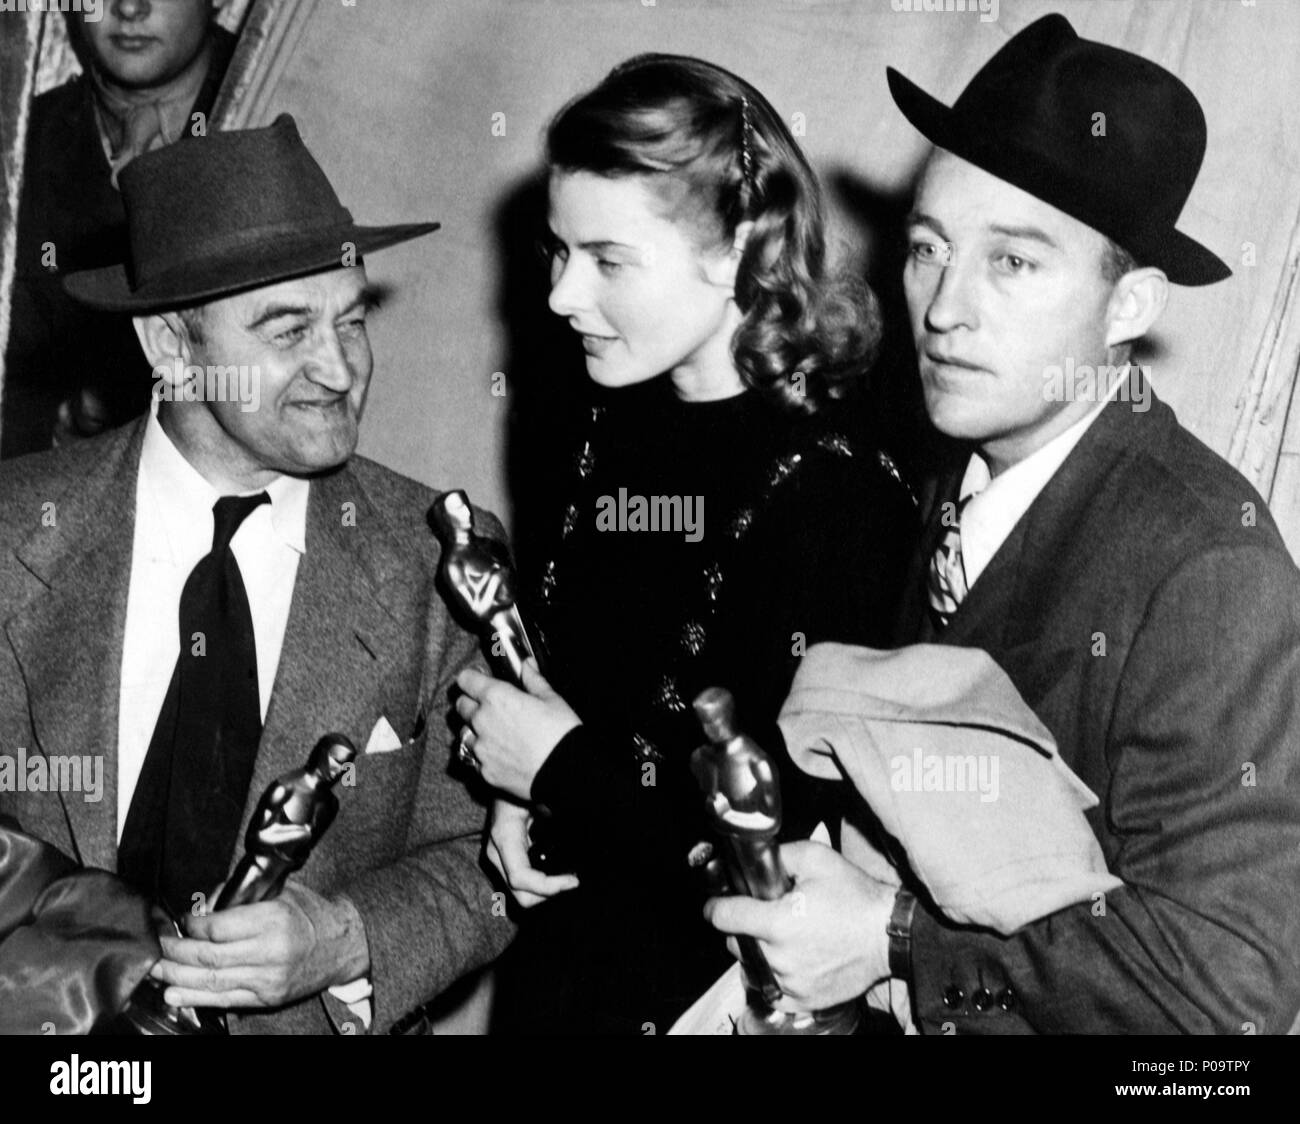 Description : La 17e Academy Awards / 1945. Barry Fitzgerald, meilleur  acteur dans un second rôle pour 'Going my way'. Ingrid Bergman, meilleure  actrice pour "Gaslight". Bing Crosby, meilleur acteur pour "j'ai